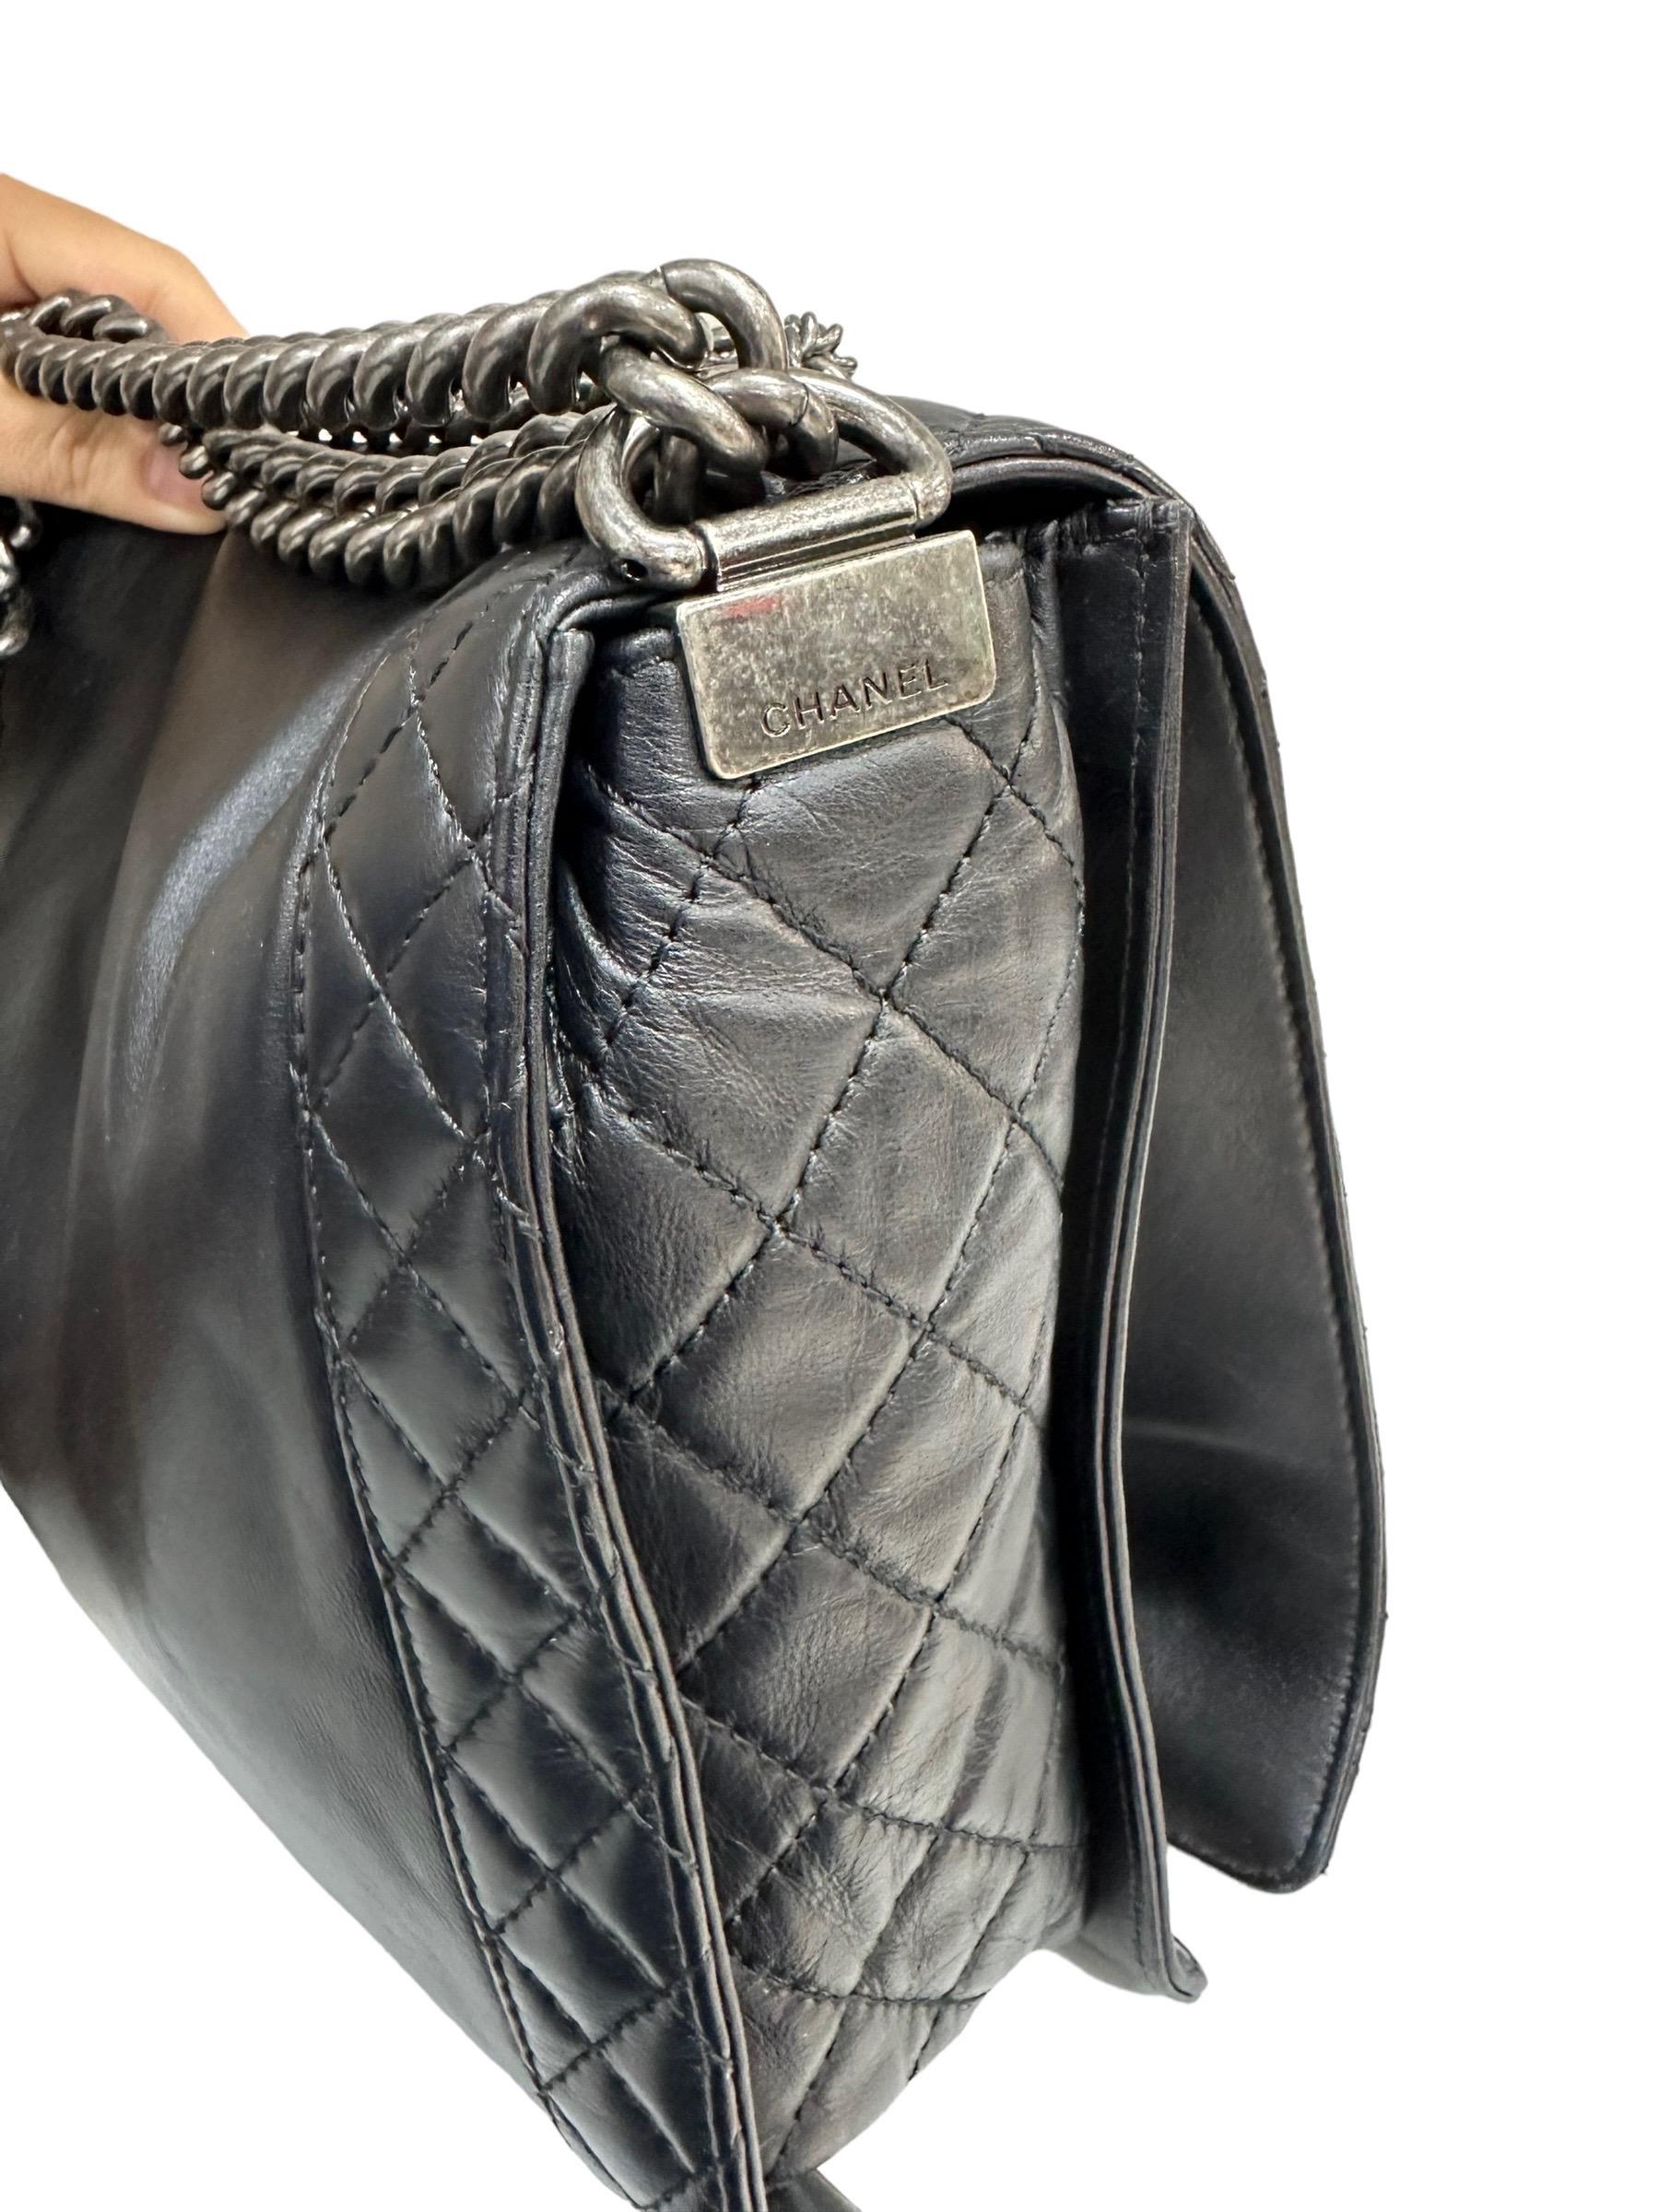 2014 Chanel Boy XL Limited Edition Shoulder Bag Multi Chains 5